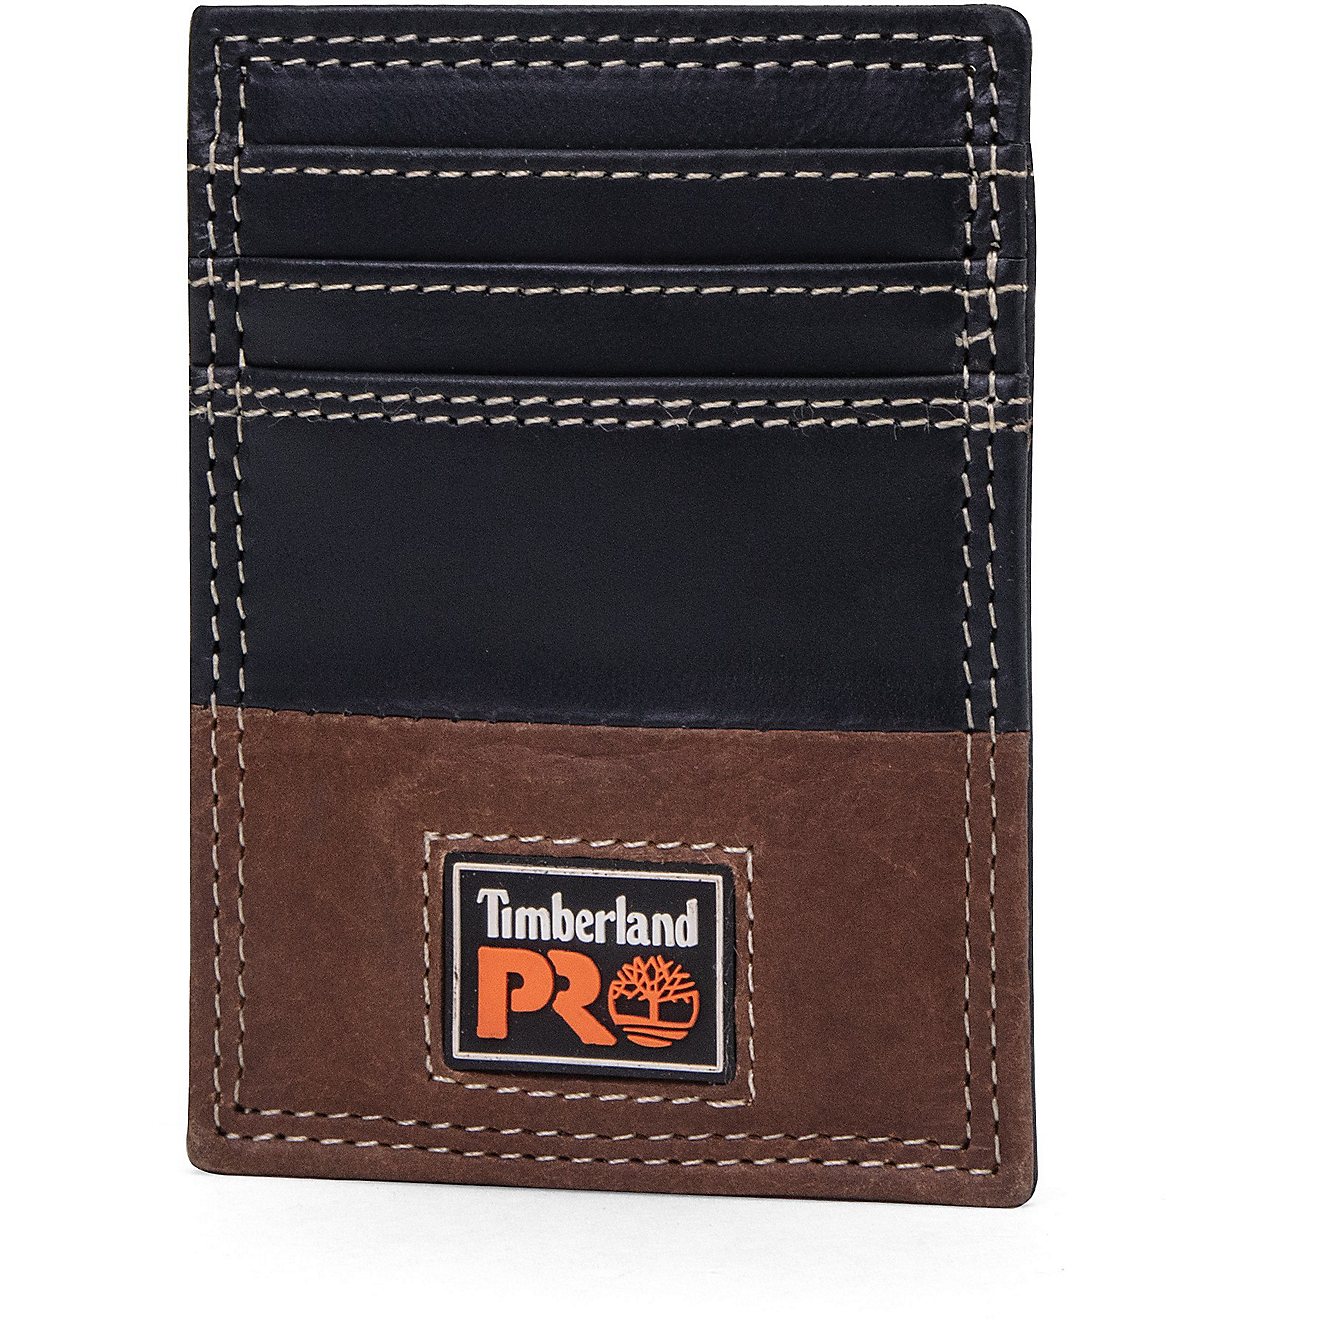 Timberland Pro Ellet Front Pocket Wallet                                                                                         - view number 1